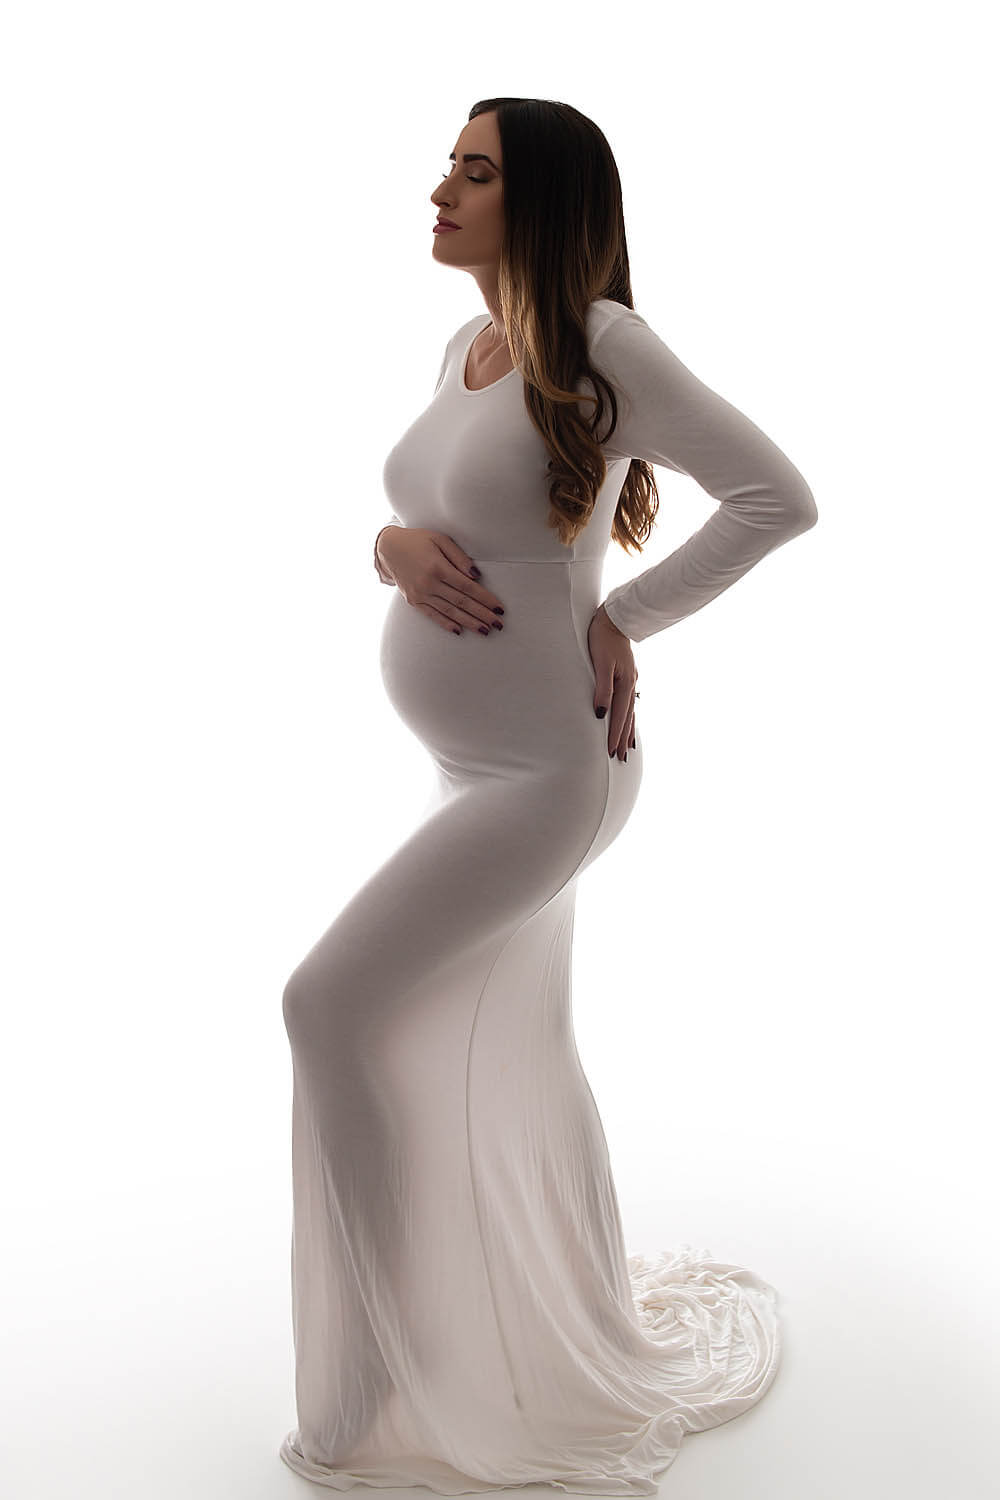 pregnant woman in white dress in davie, fl